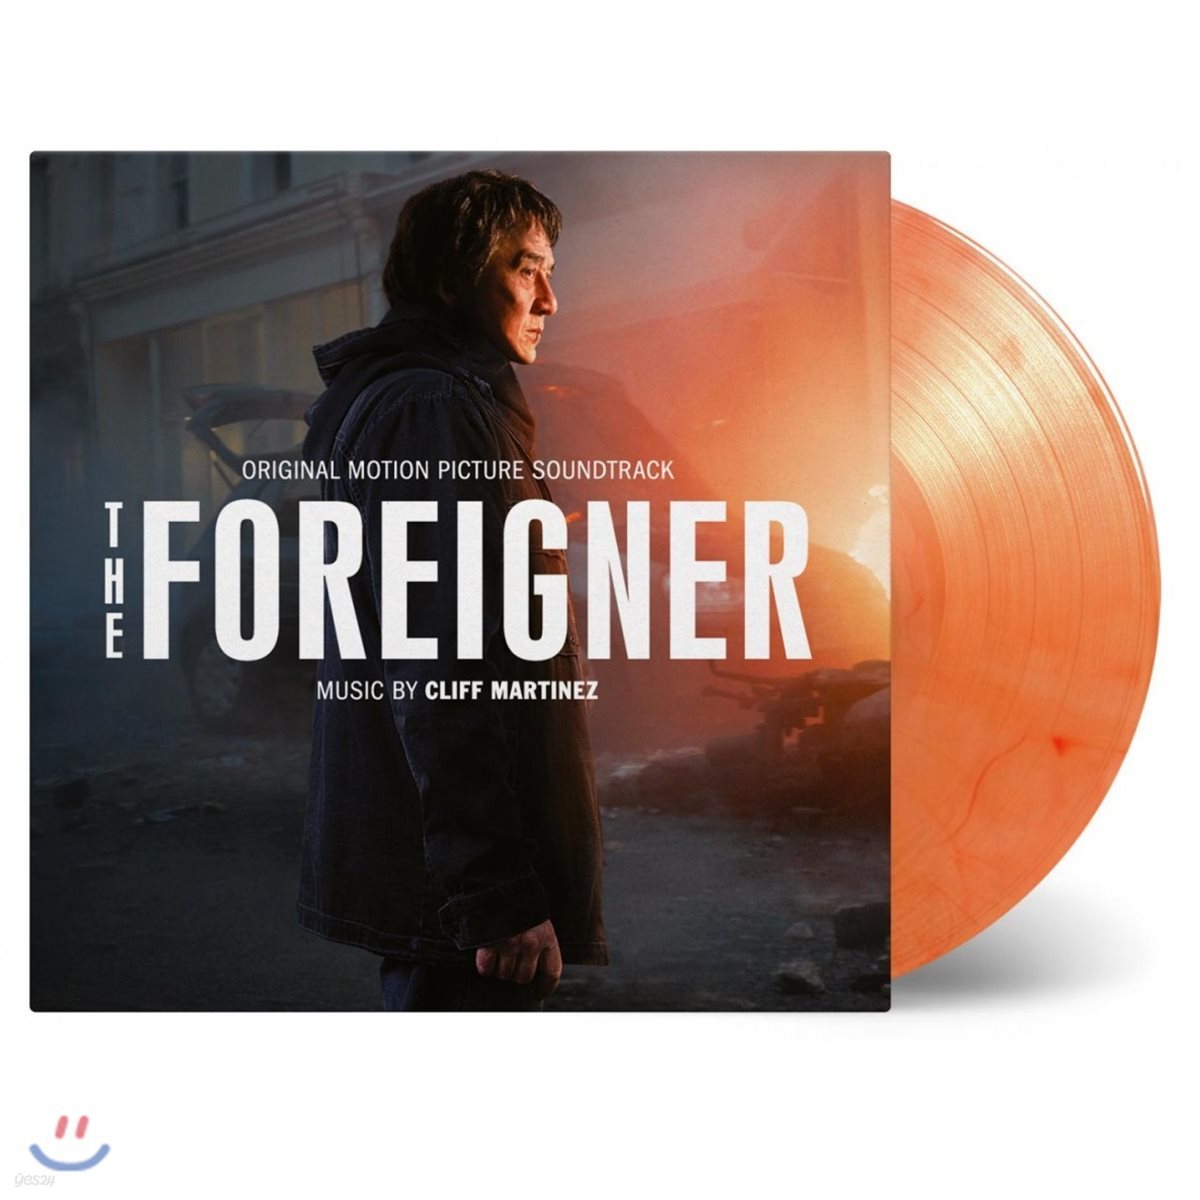 더 포리너 영화음악 (The Foreigner OST by Cliff Martinez 클리프 마르티네즈) [오렌지 컬러 LP]